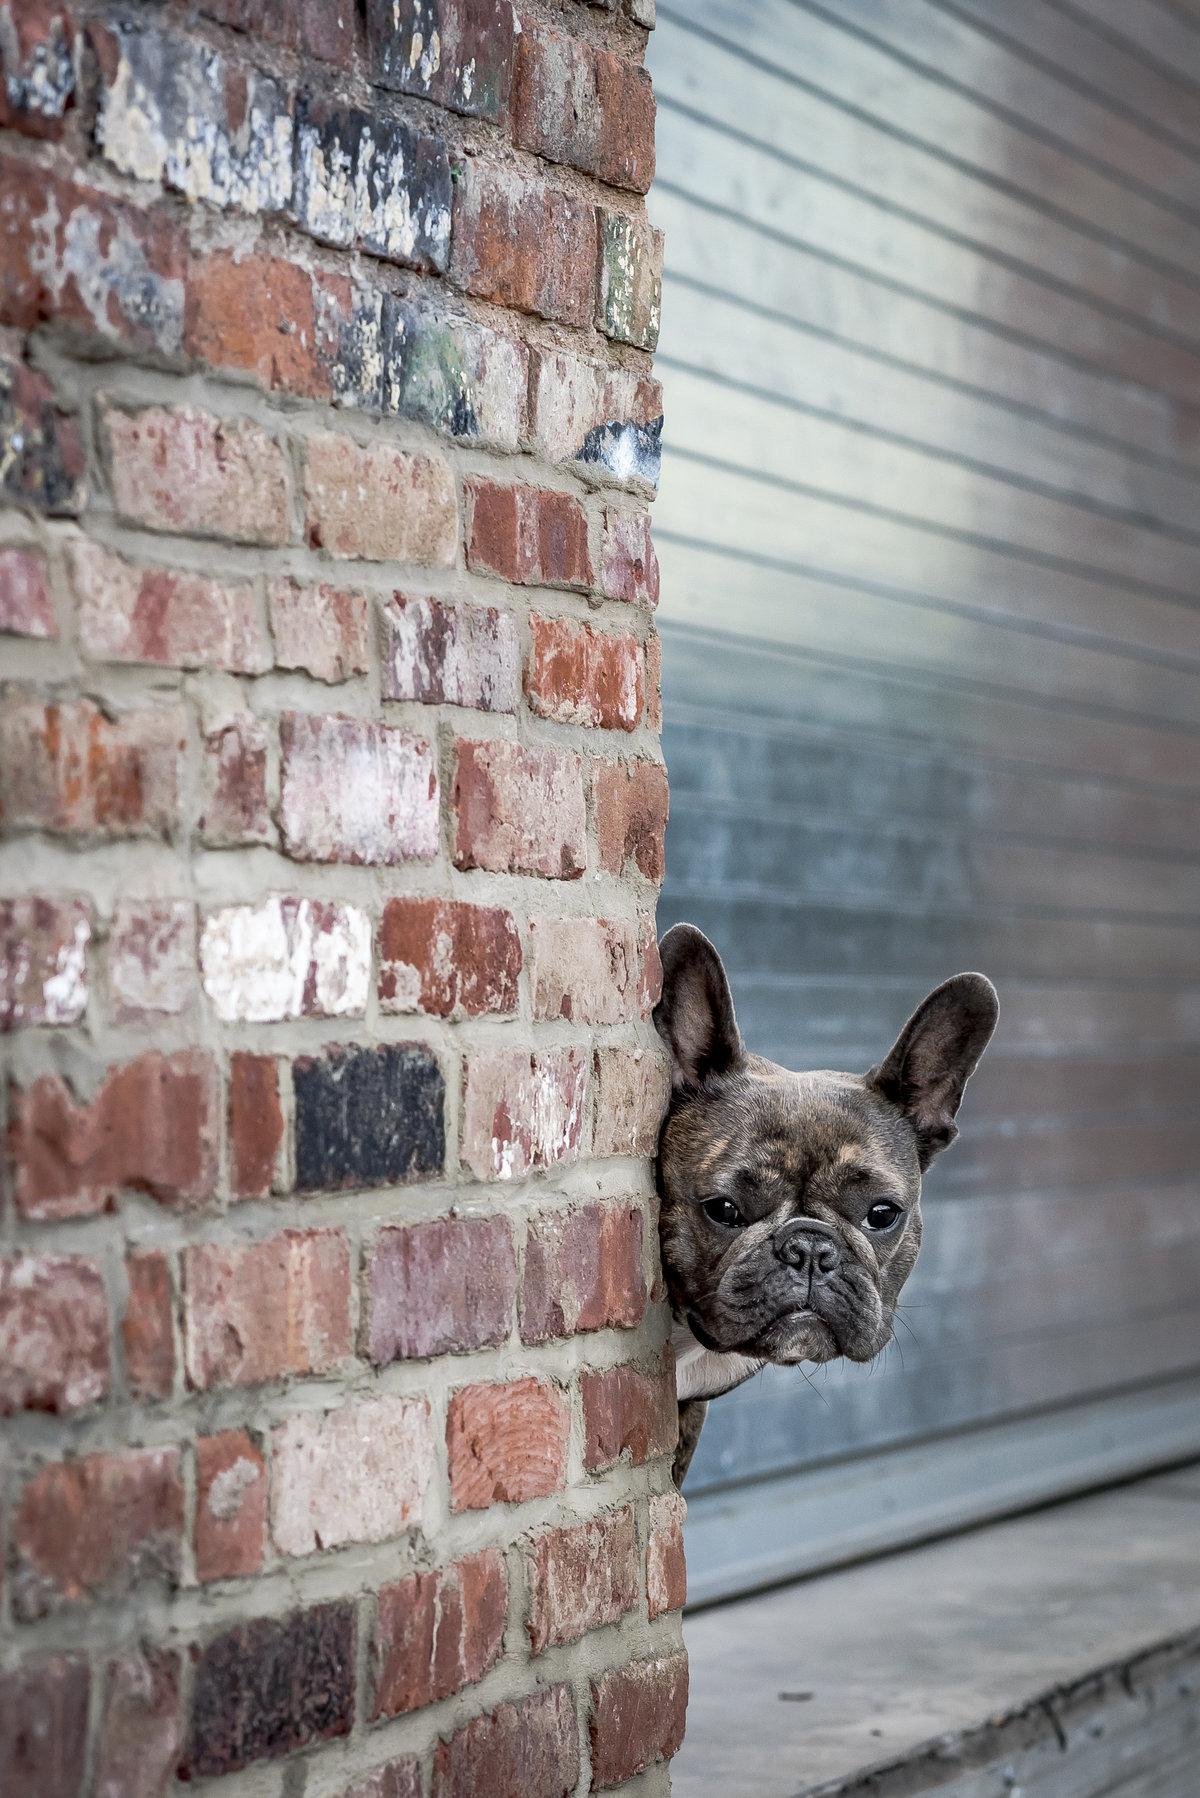 Fremch Bulldog peering from behind a brick wall